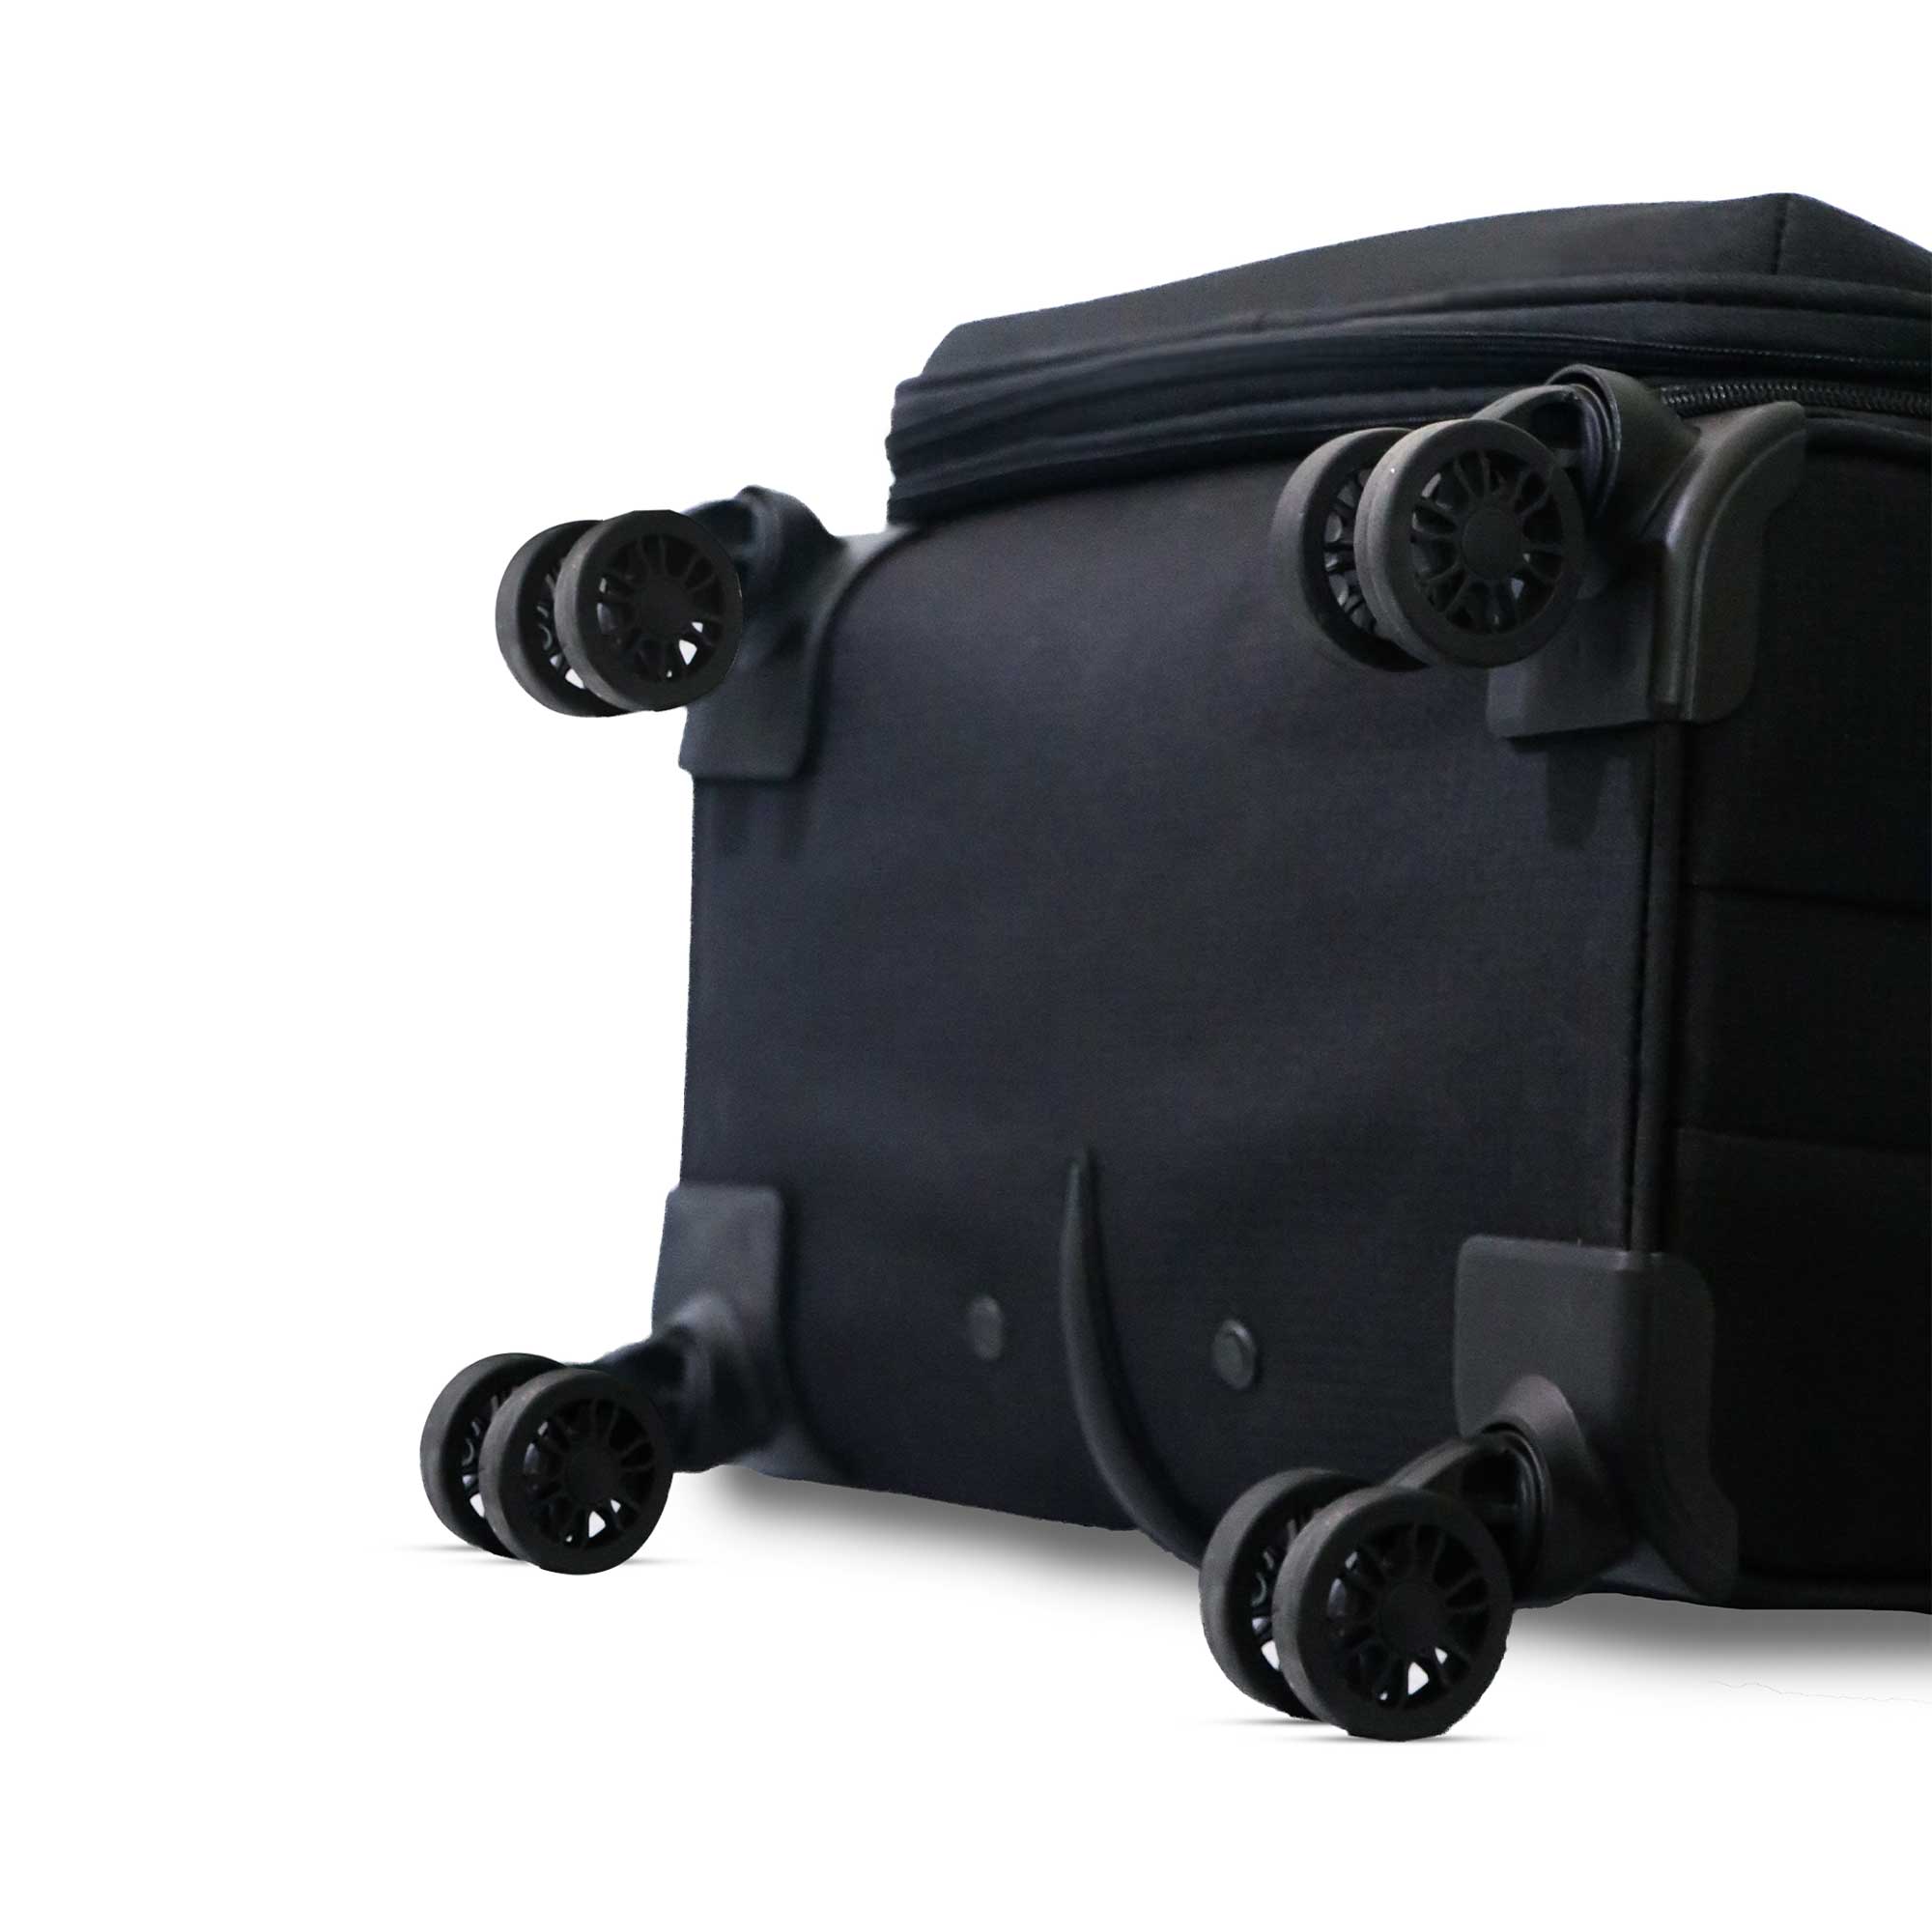 Timus-Lifestyle-Luggage-Soft-Luggage-trolley-bag-Salsa-Plus-Luggage-Trolley-Bag-58cm-Black-3